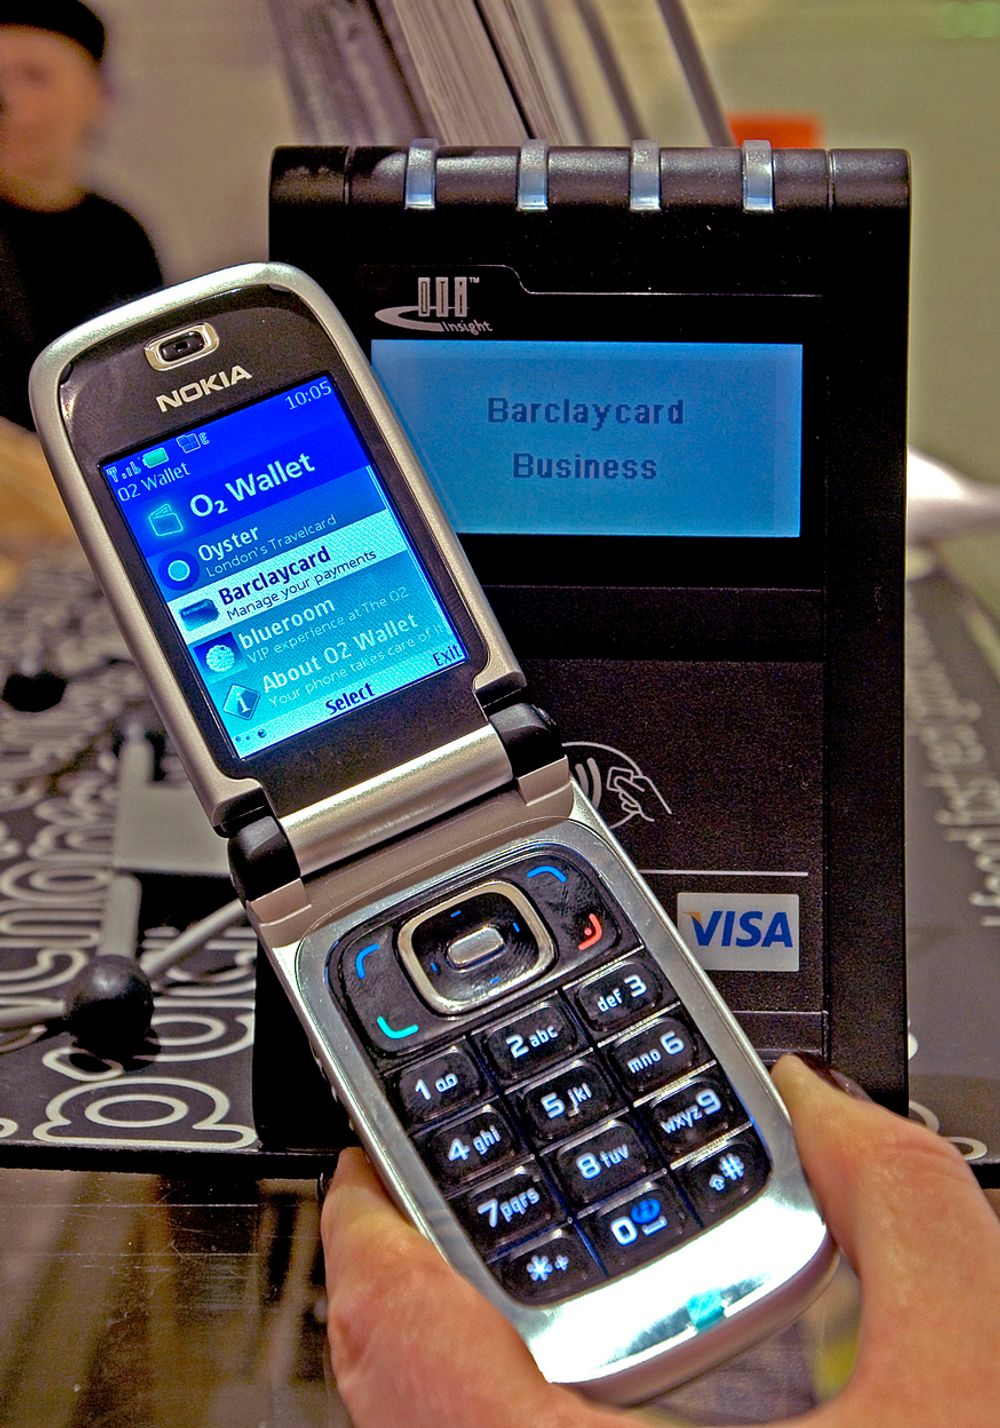 BETALE I KASSEN:
Med en NFC-telefon er det mulig å betale både småbeløp med elektroniske kontanter og større beløp med det innebygde betalingskortet.